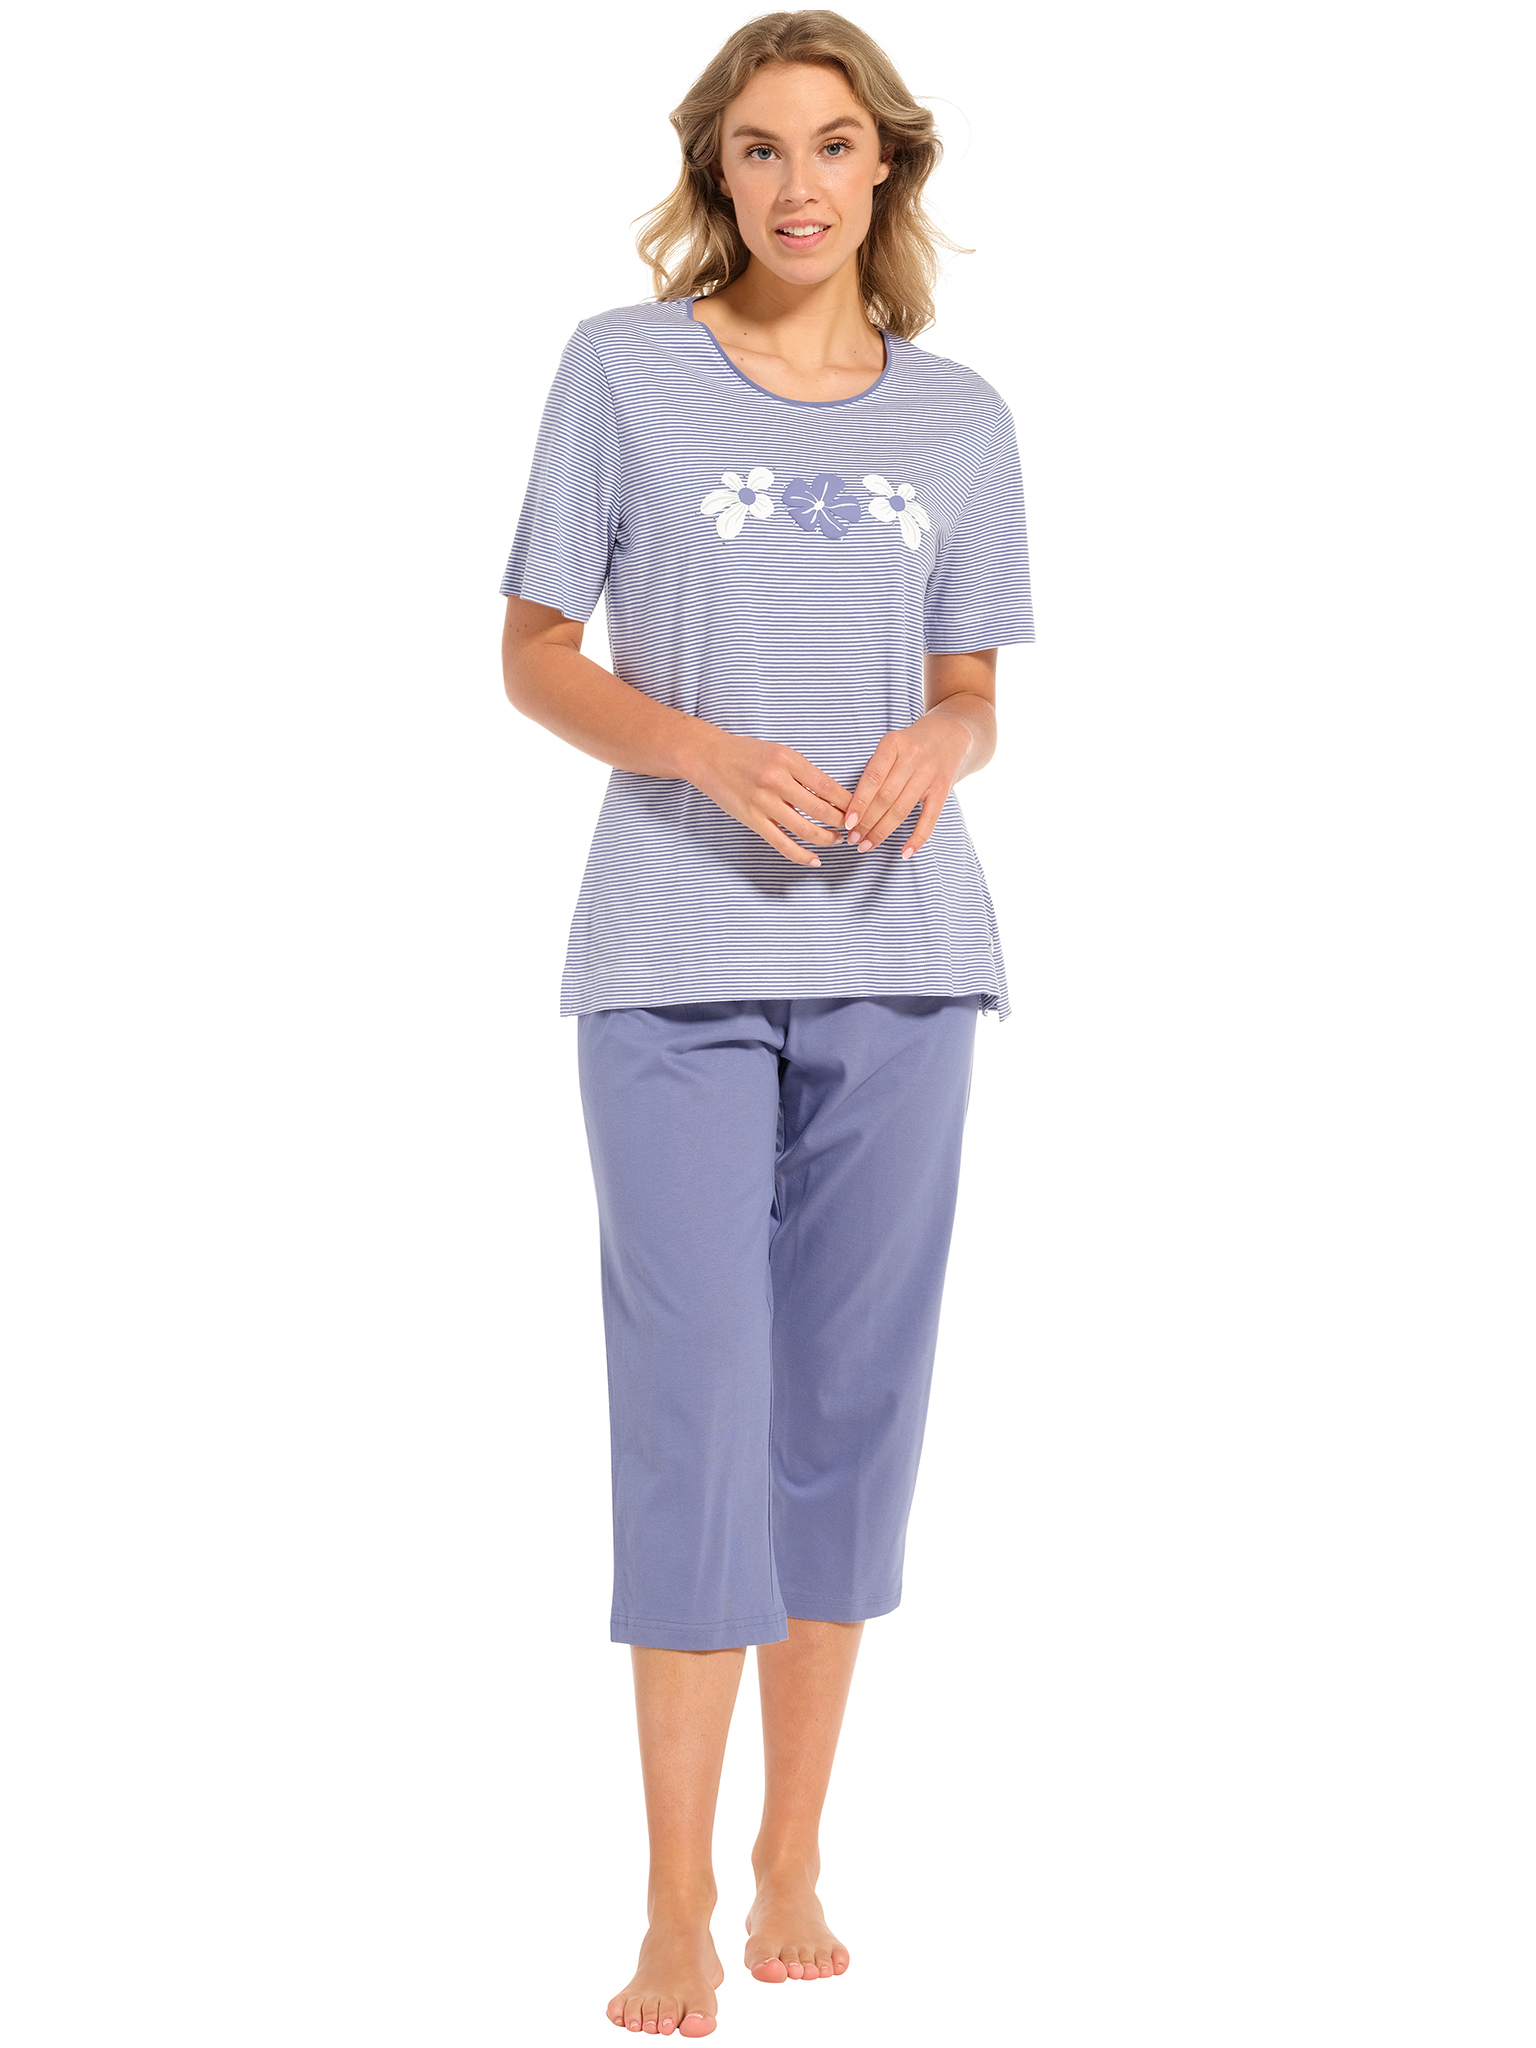 Pastunette - Blossoms - Dames Pyjamaset - Blauw - Organisch Katoen - Maat 50